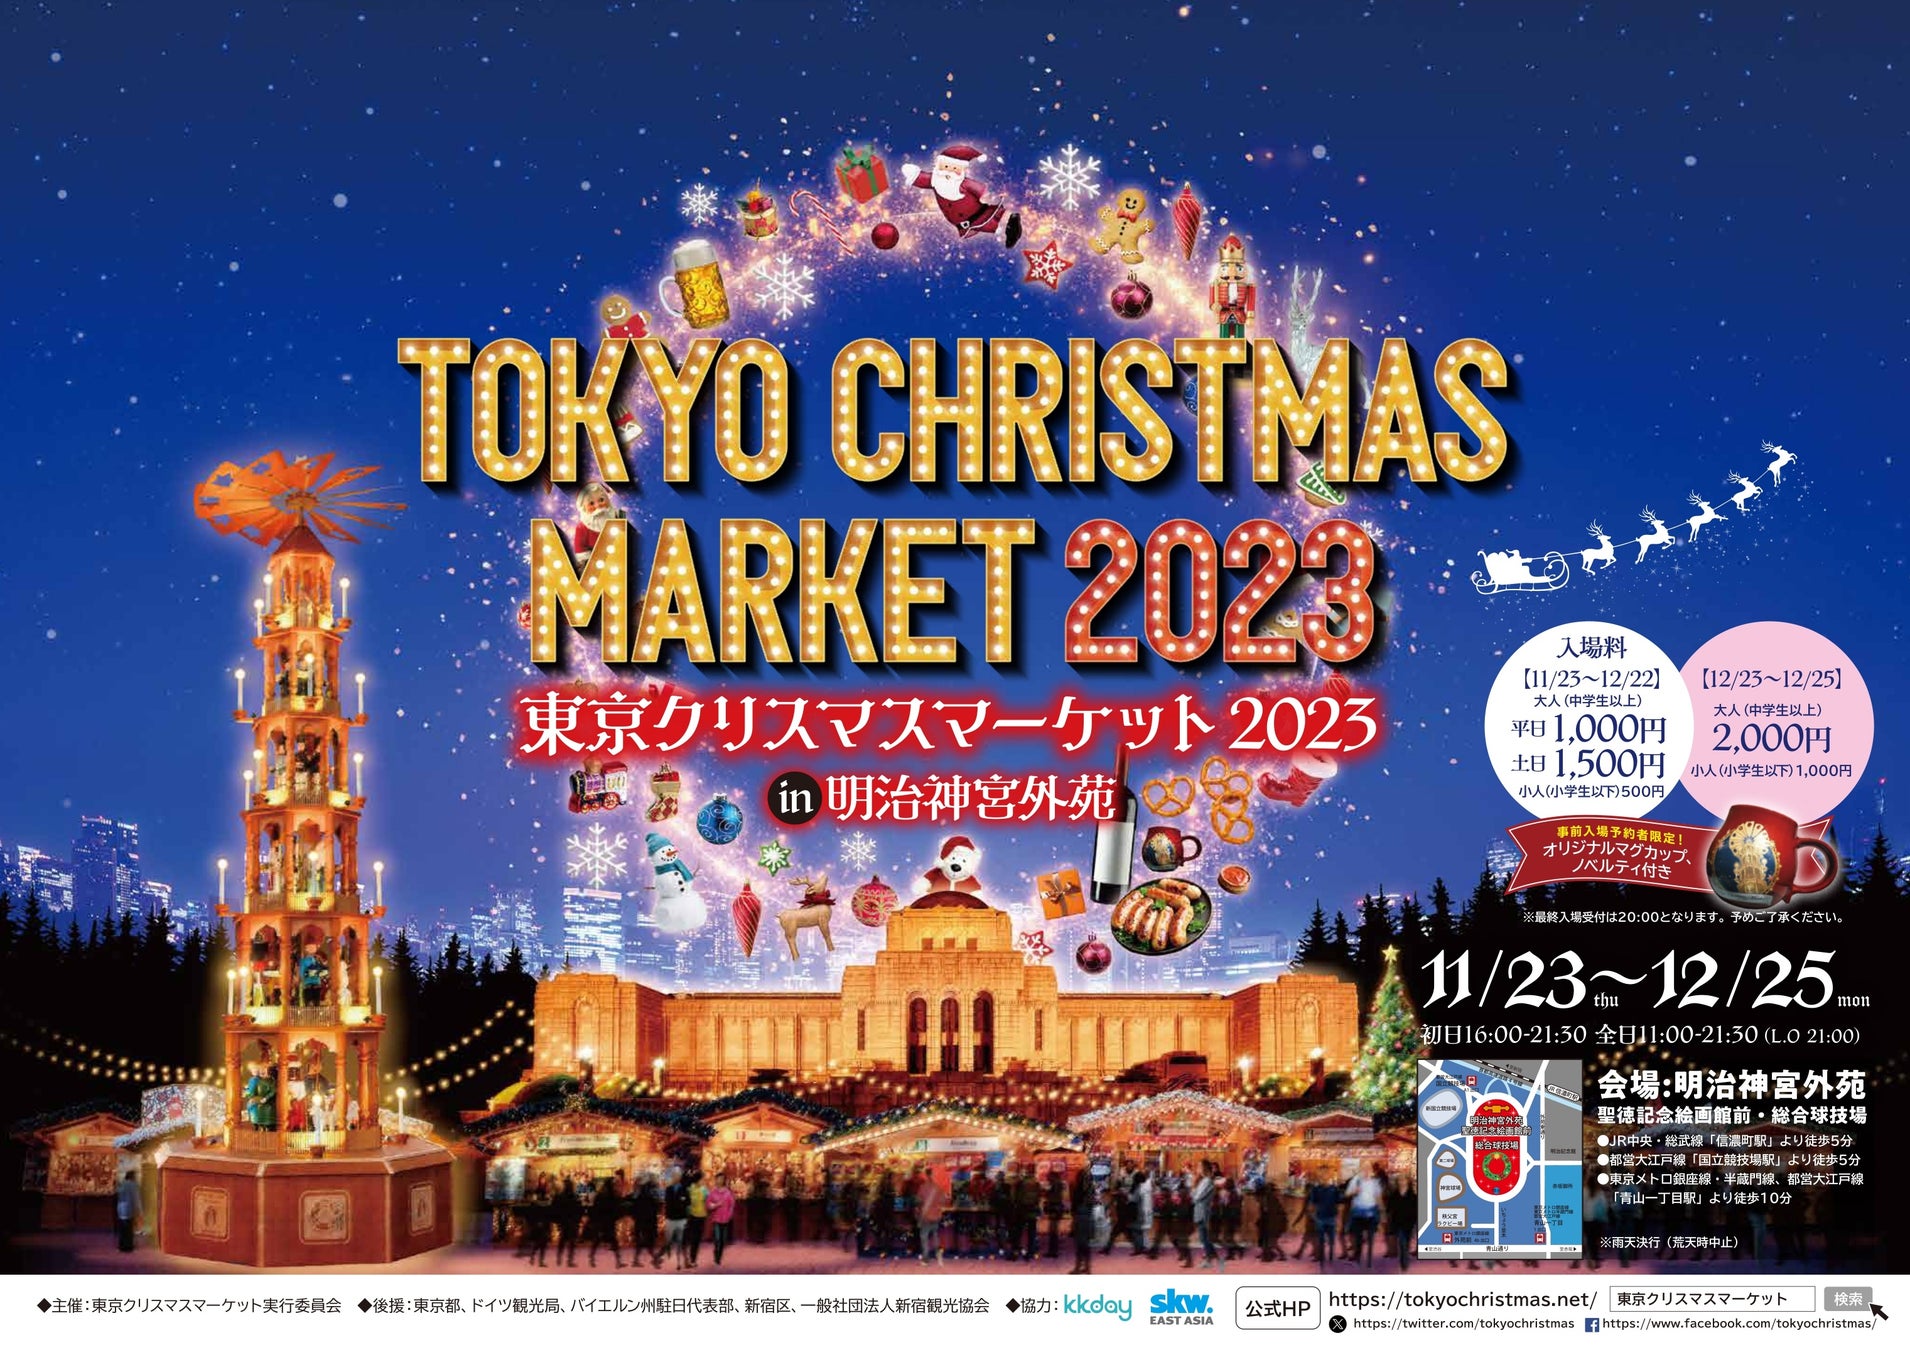 KKday、東京クリスマスマーケット2023 in 明治神宮外苑の前売り券を限定販売KKdayから豪華商品などが貰える２つのクリスマスプレゼントを用意